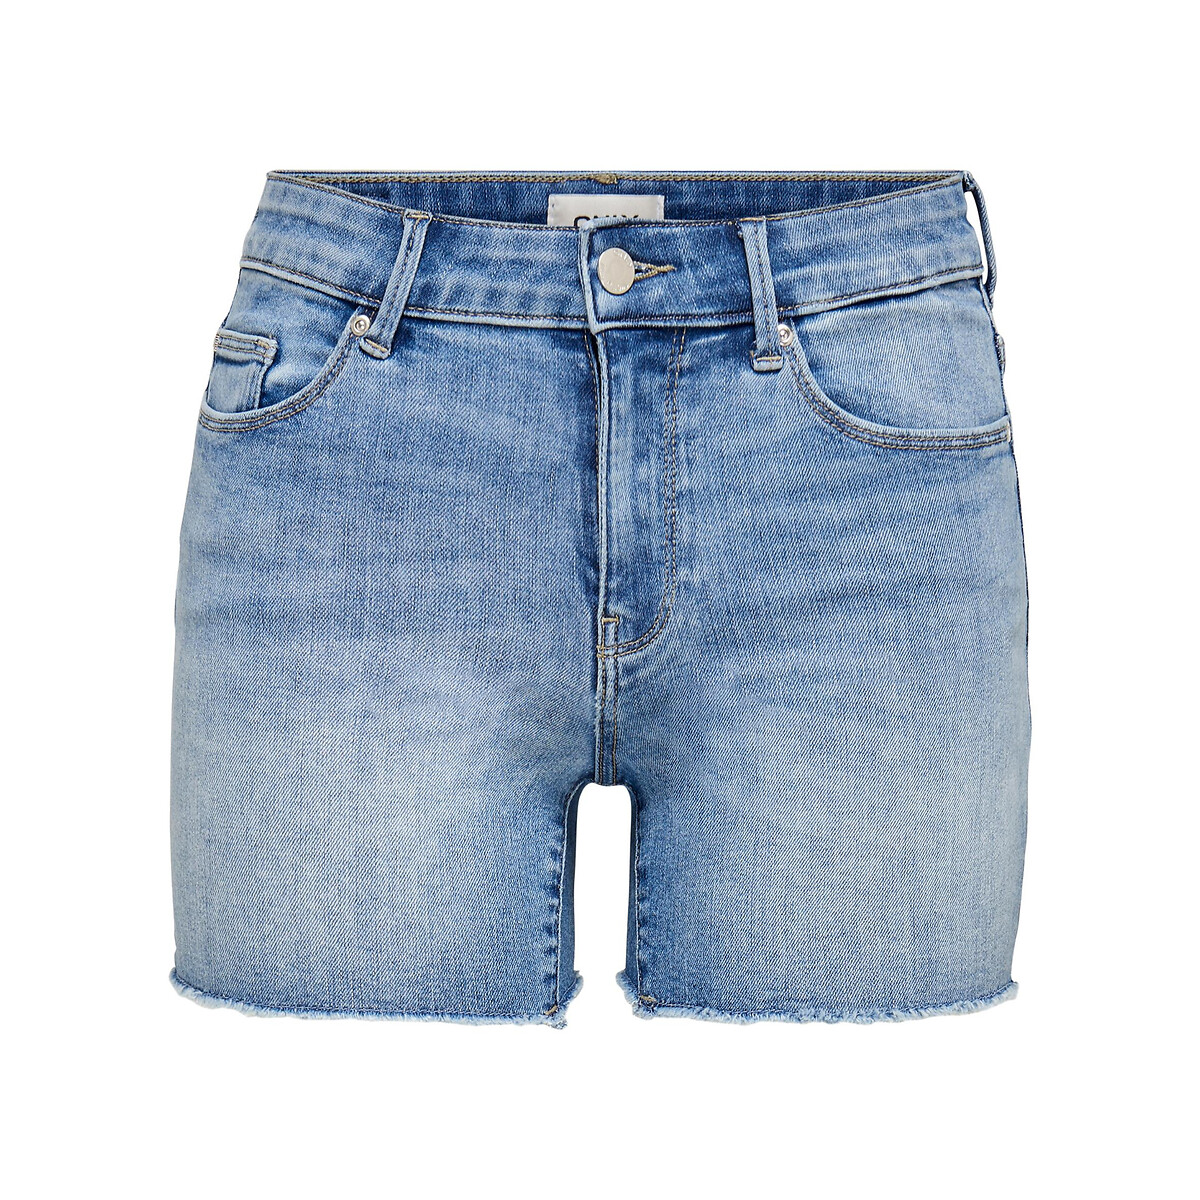 Шорты Из джинсовой ткани S синий LaRedoute, размер S - фото 4